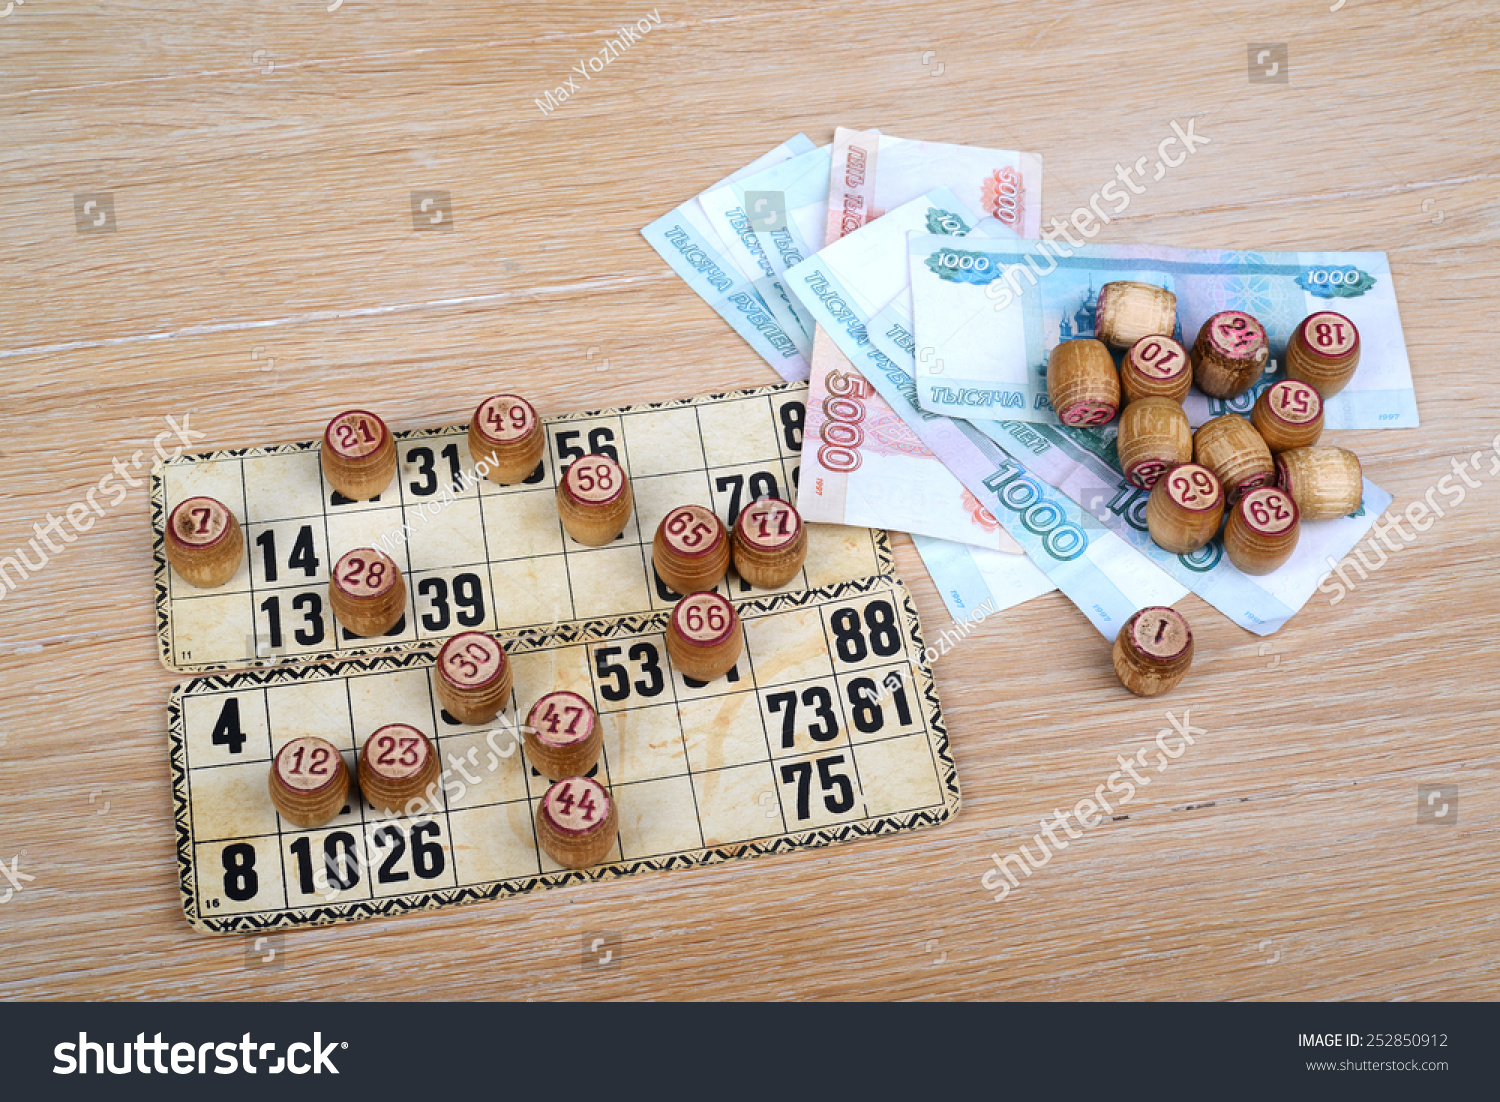 saturday lotto 3917